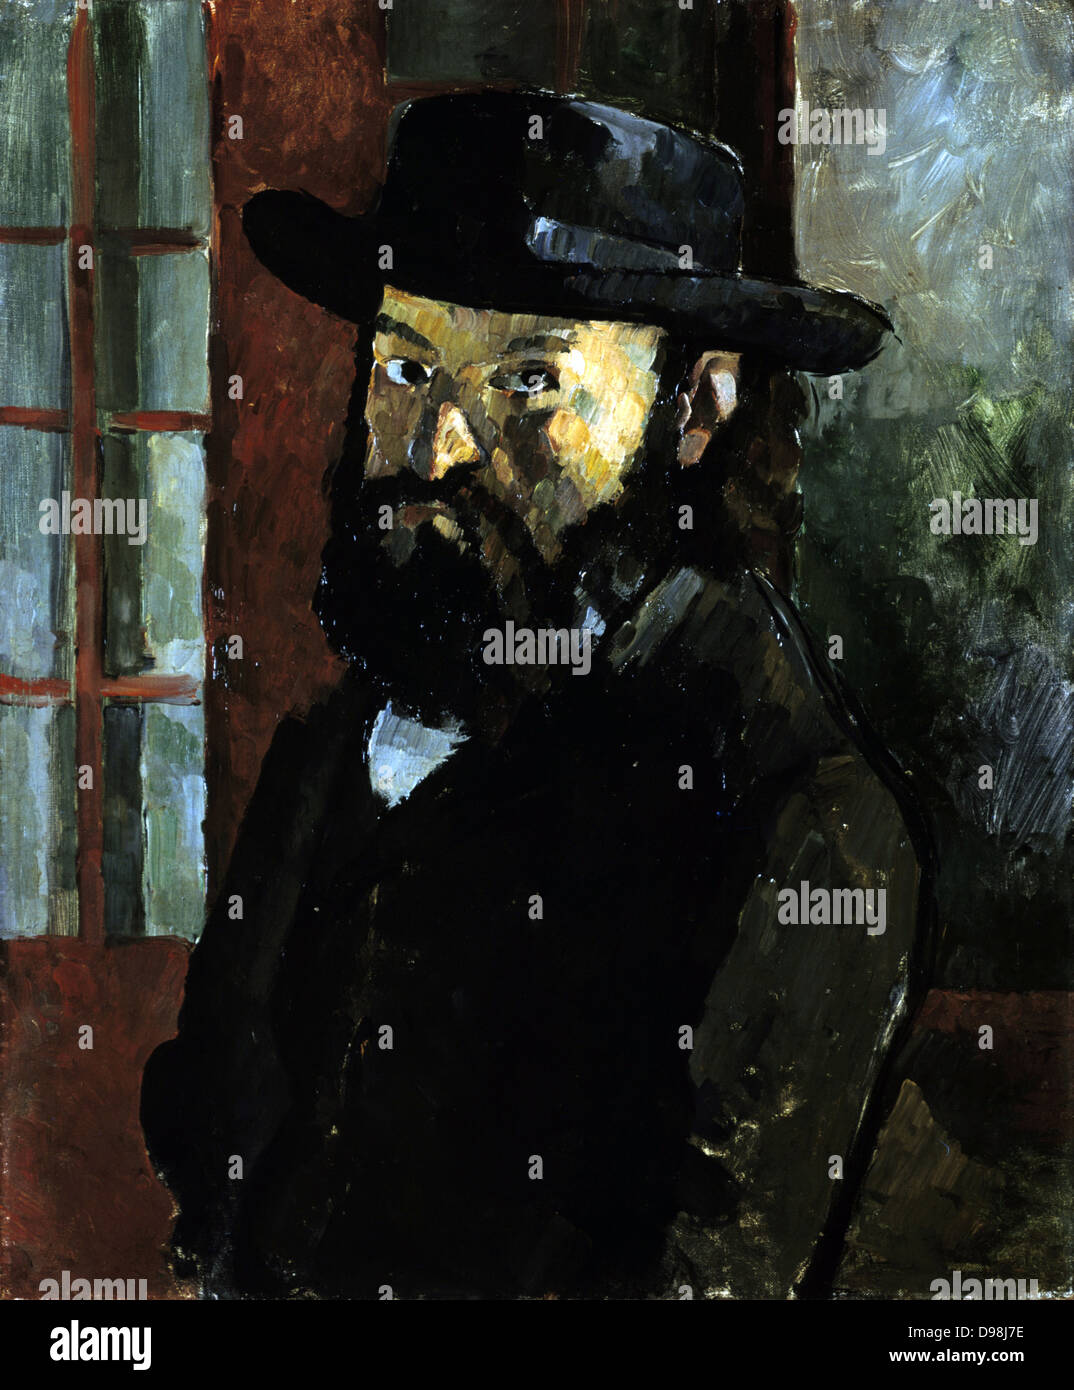 Selbstportrait in einem schwarzen Hut ", c1879. Öl auf Leinwand. P; Aul Cézanne (1839-1906) französische Post-Impressionisten Maler. Stockfoto